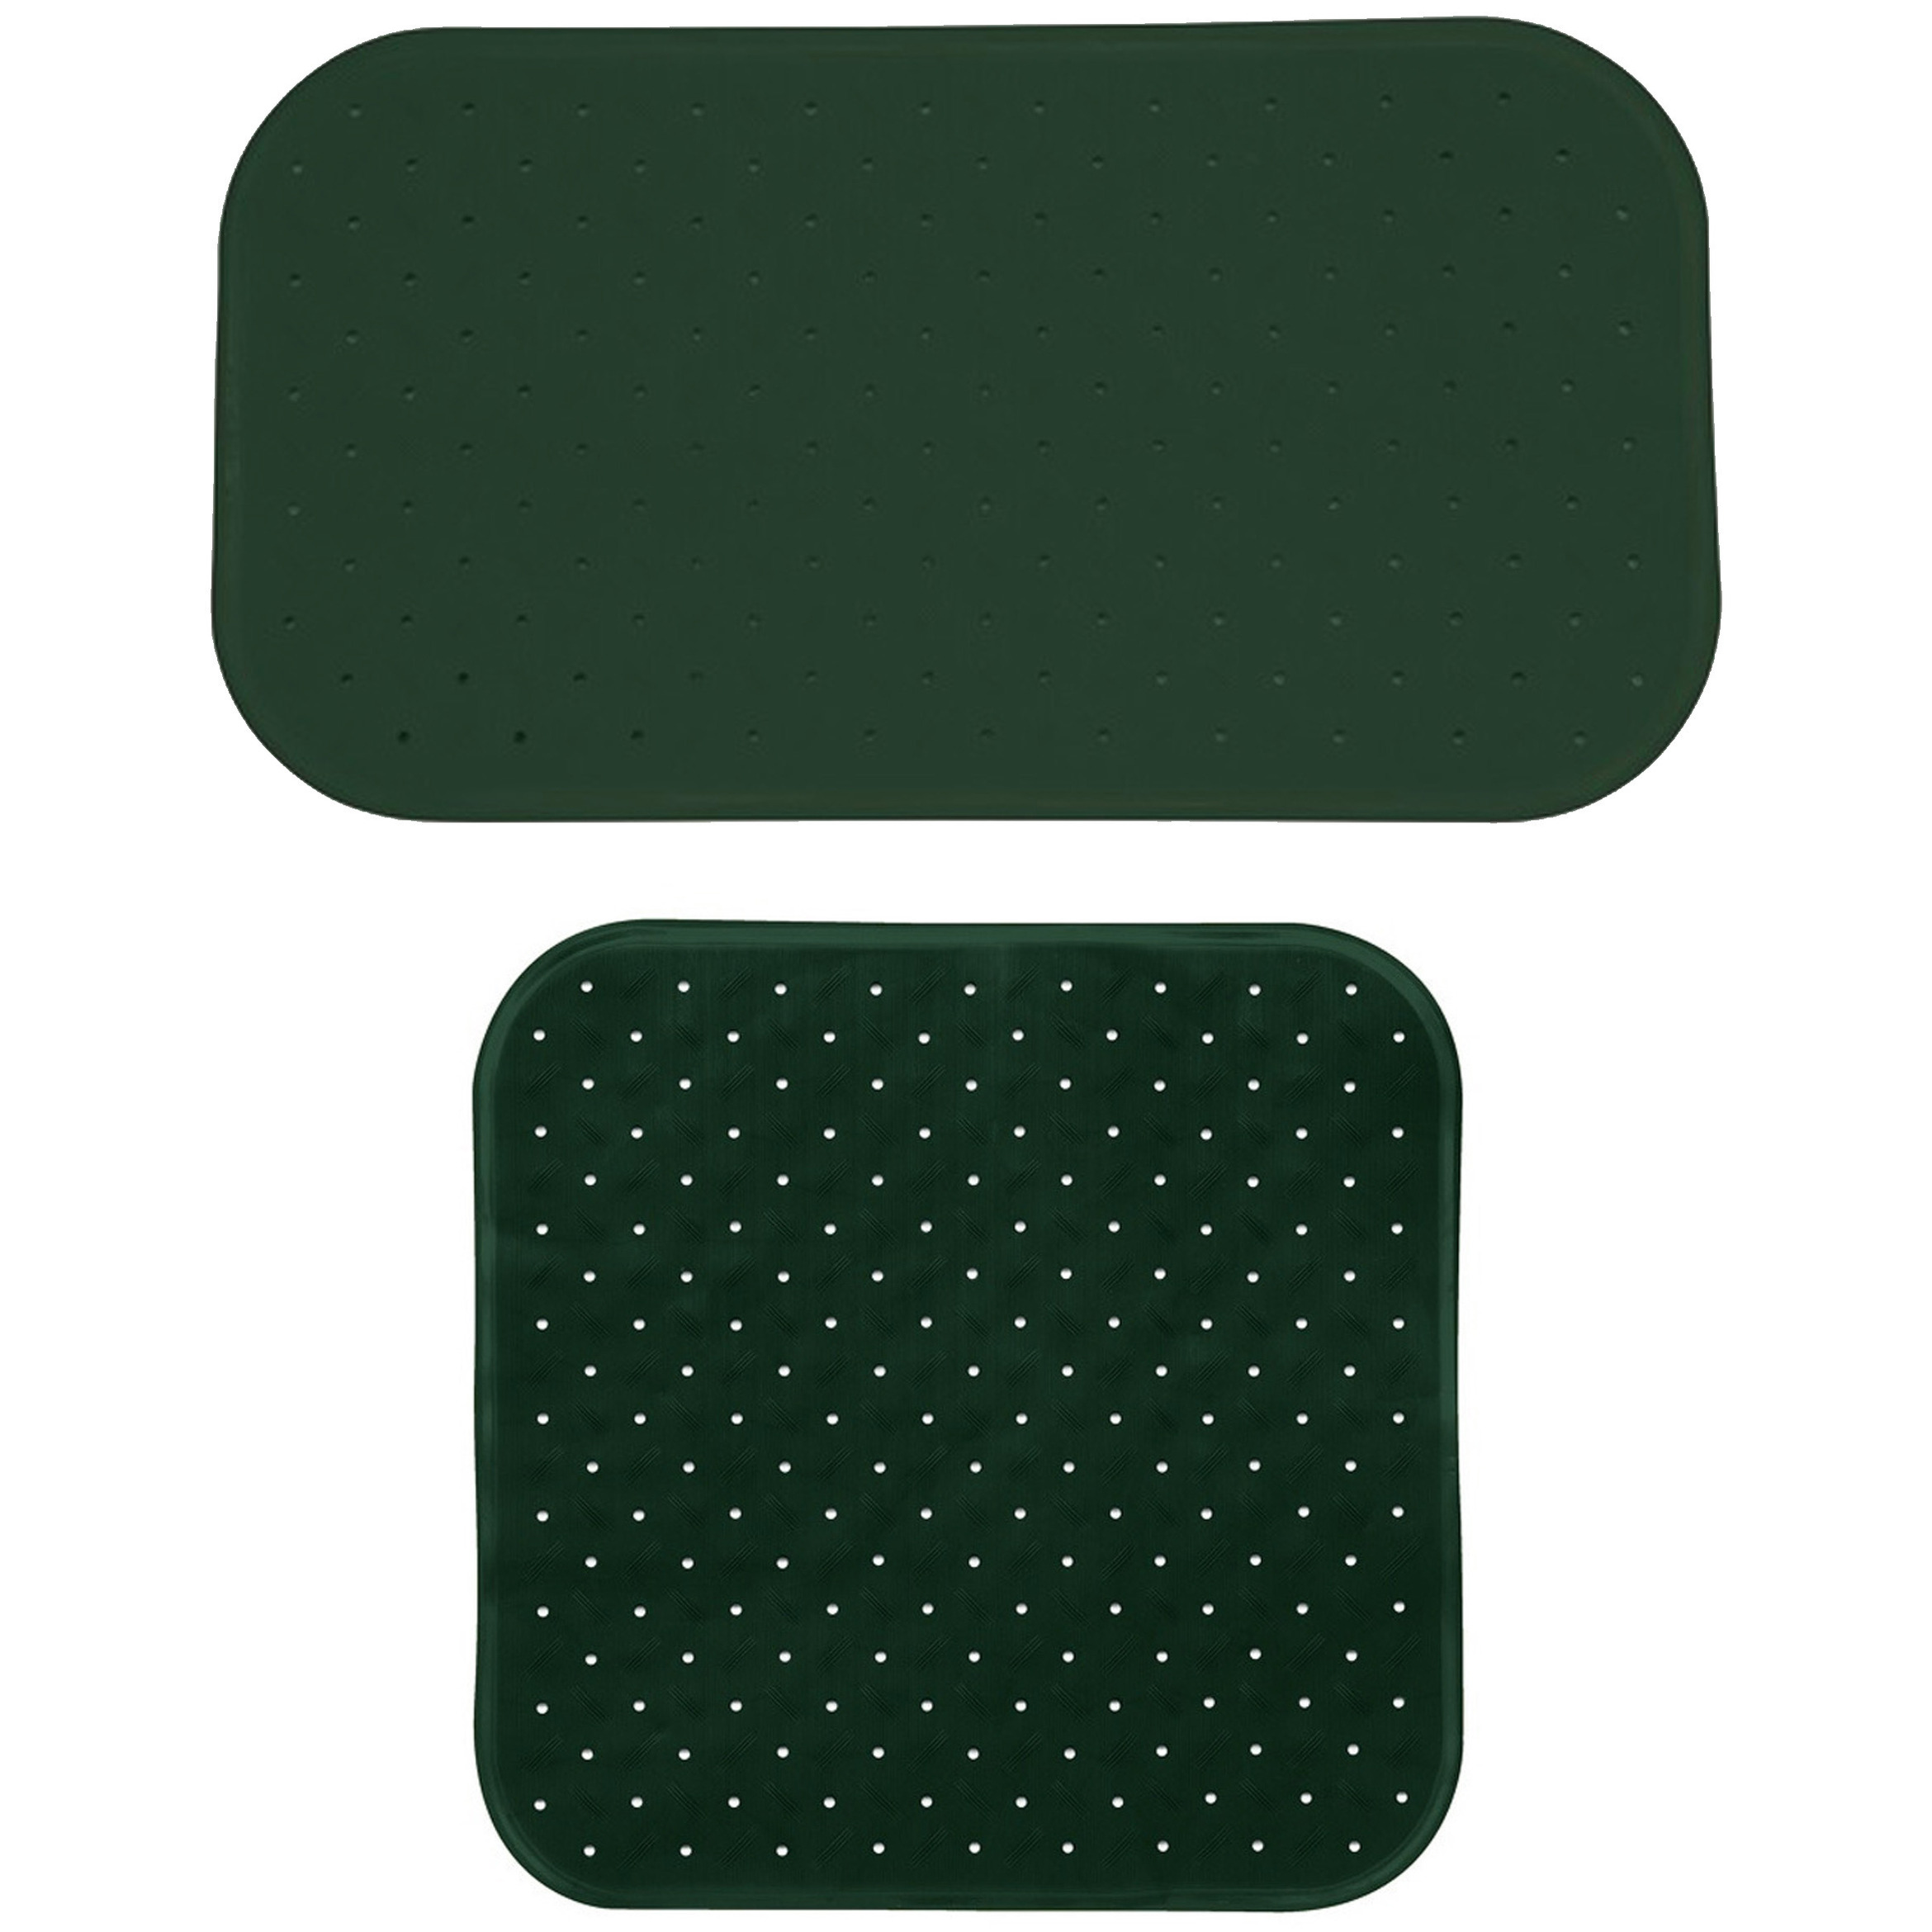 MSV Douche-bad anti-slip matten set badkamer rubber 2x stuks donkergroen 2 formaten